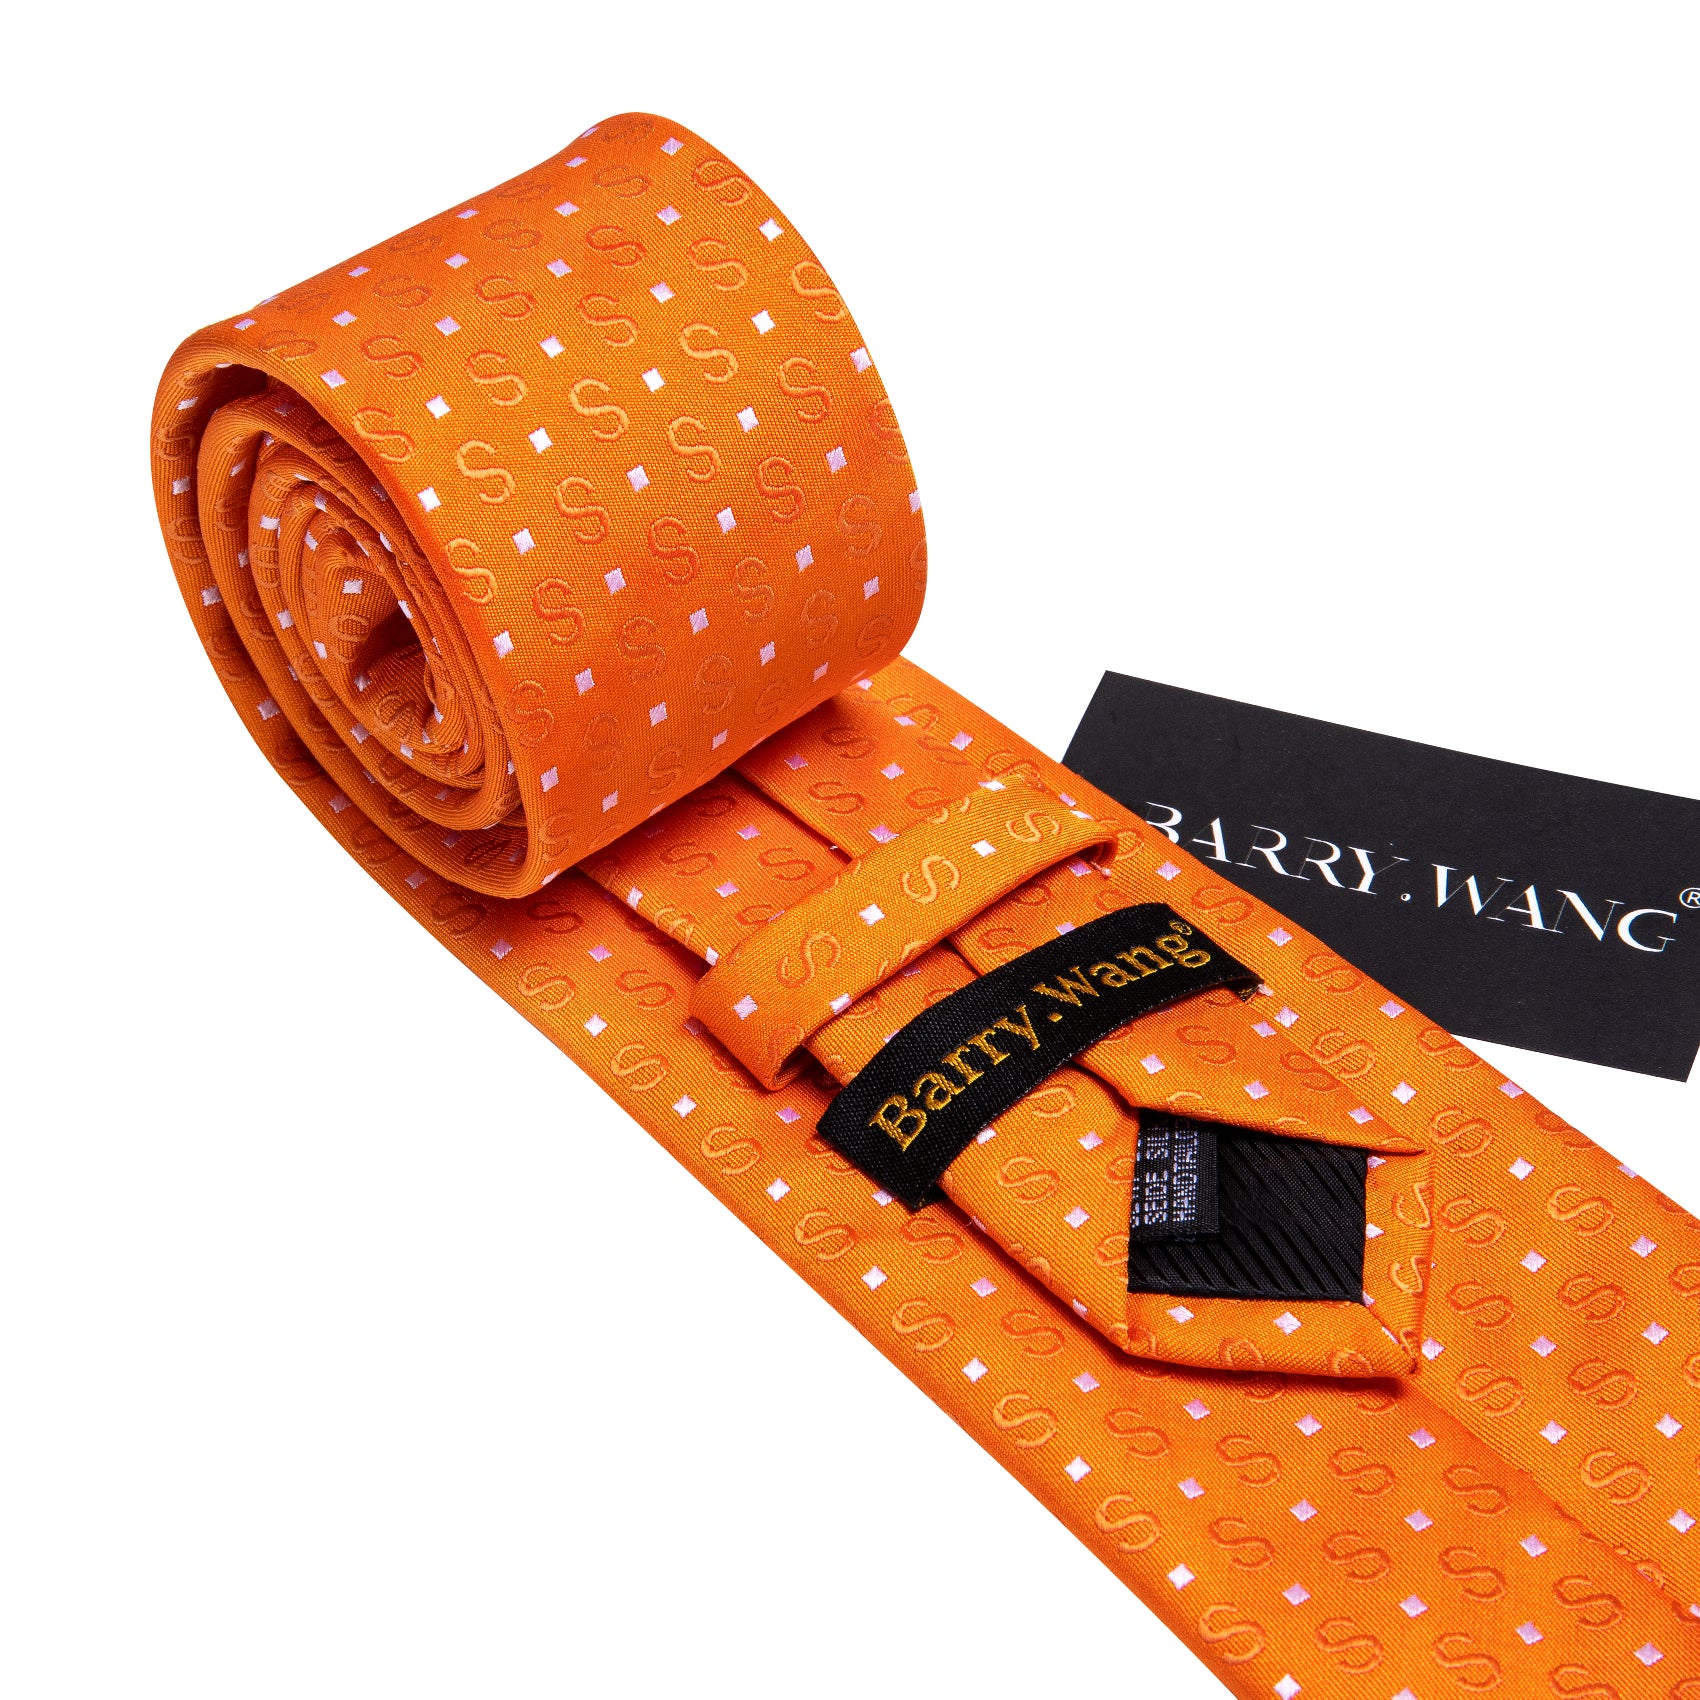 Orange White Floral Silk Tie Pocket Square Cufflinks Set